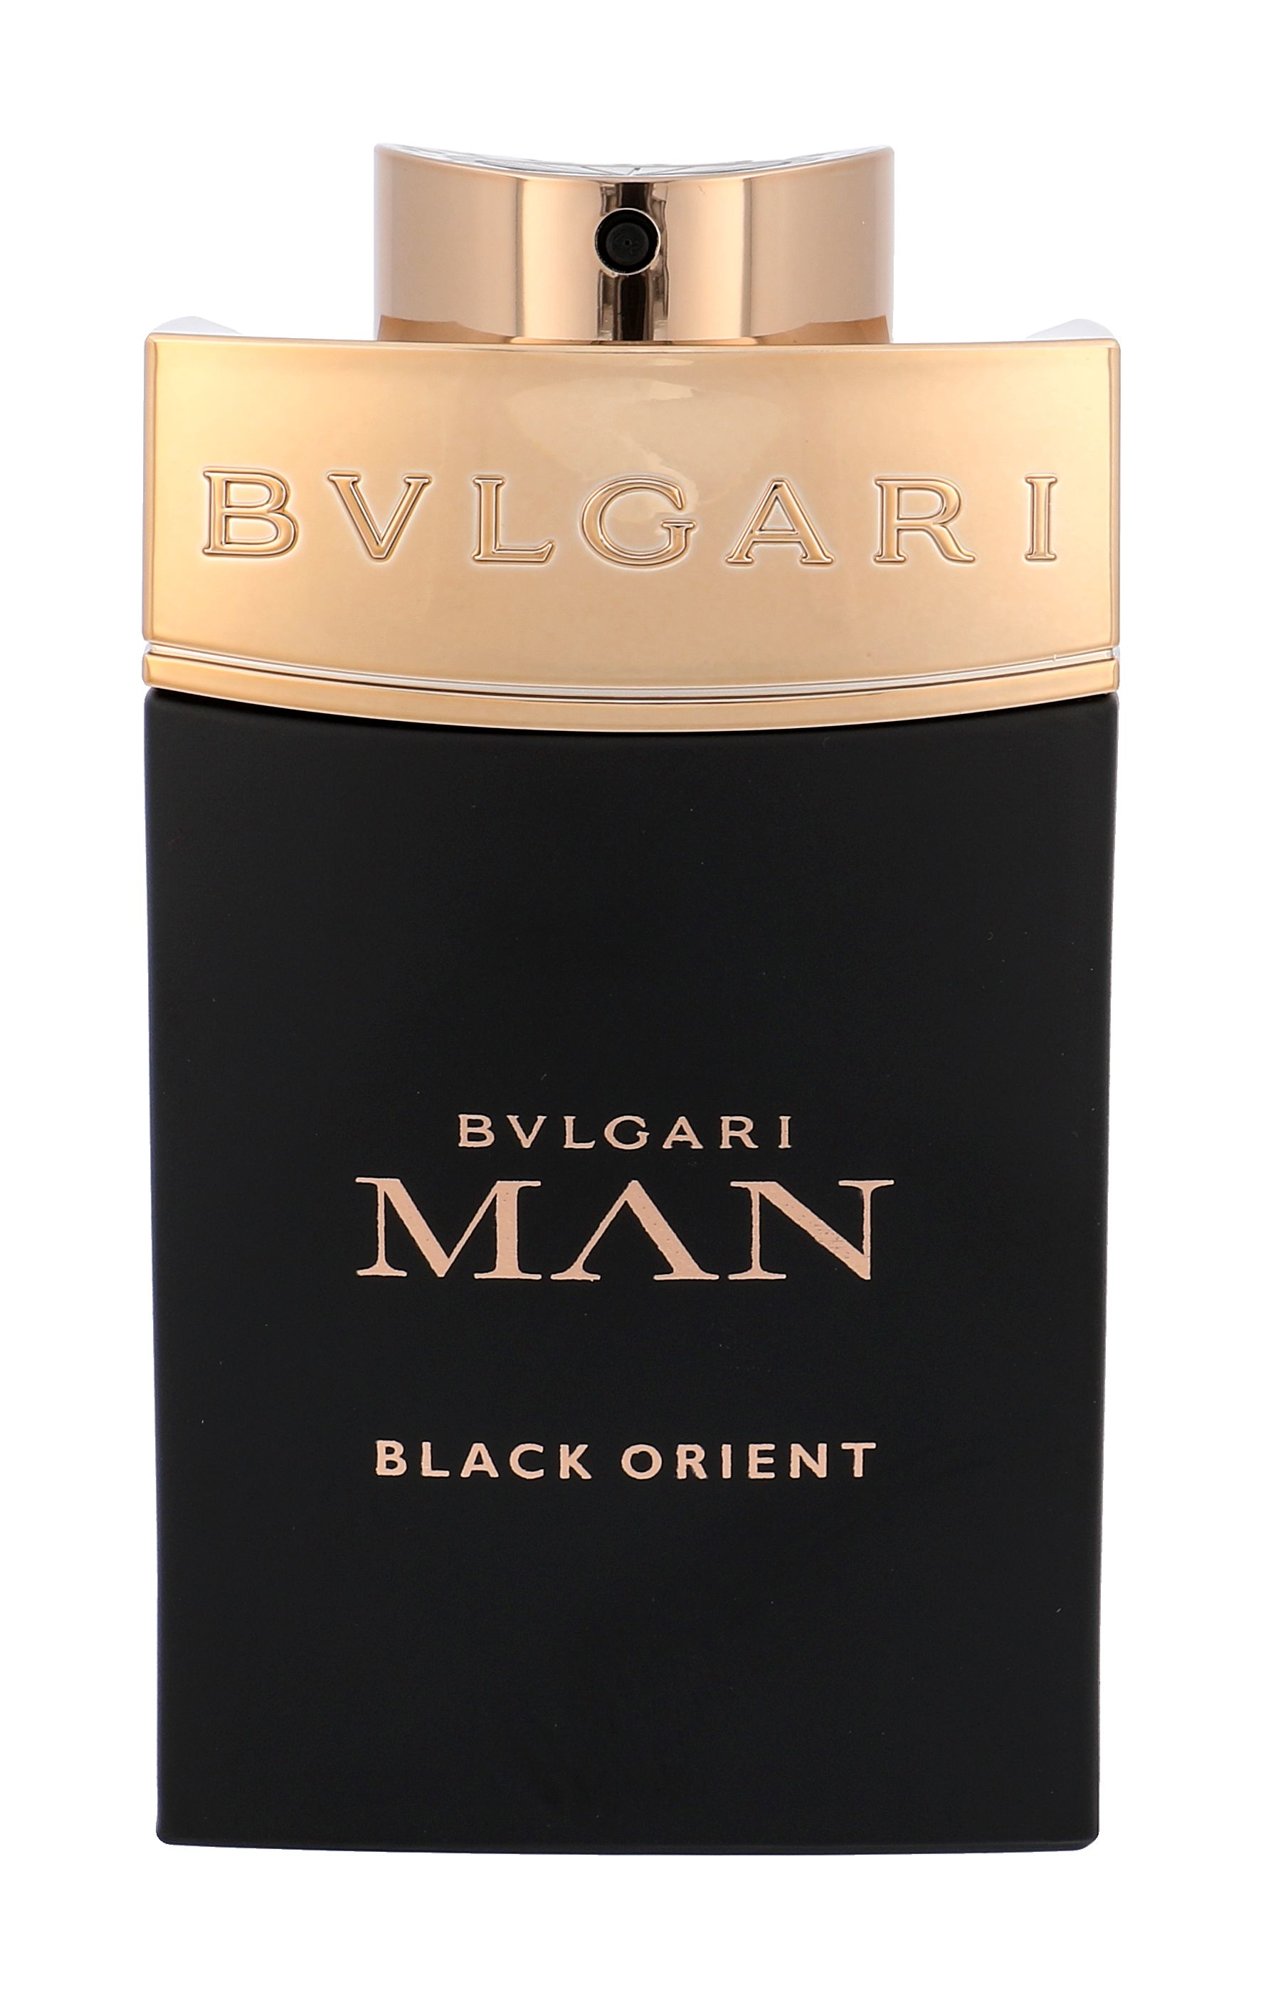 Bvlgari Man Black Orient 100ml Kvepalai Vyrams Parfum